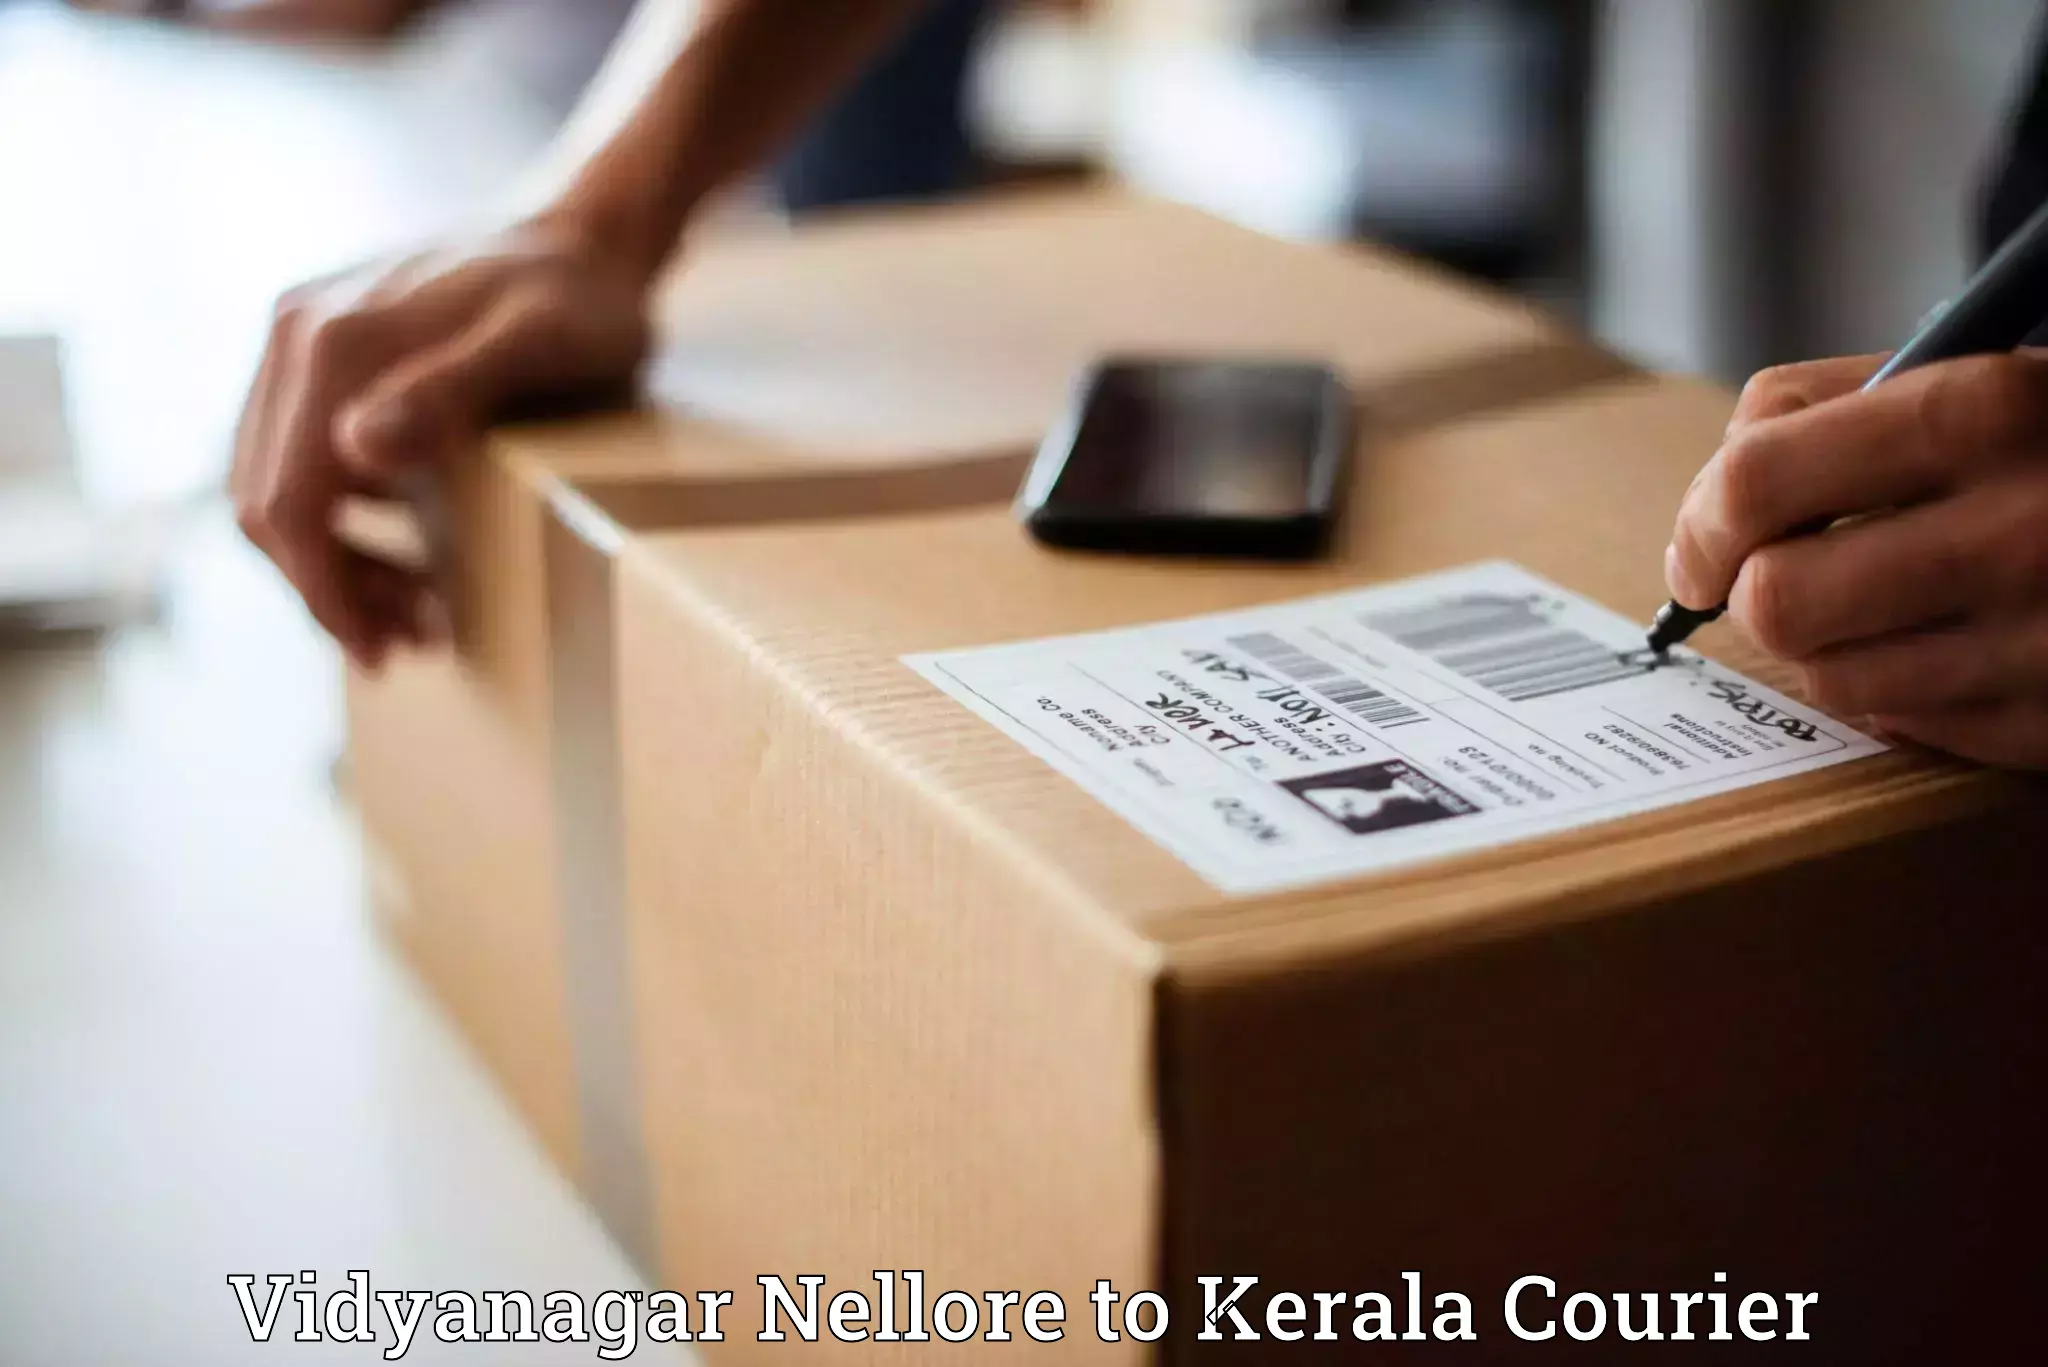 High-speed parcel service Vidyanagar Nellore to Chengannur